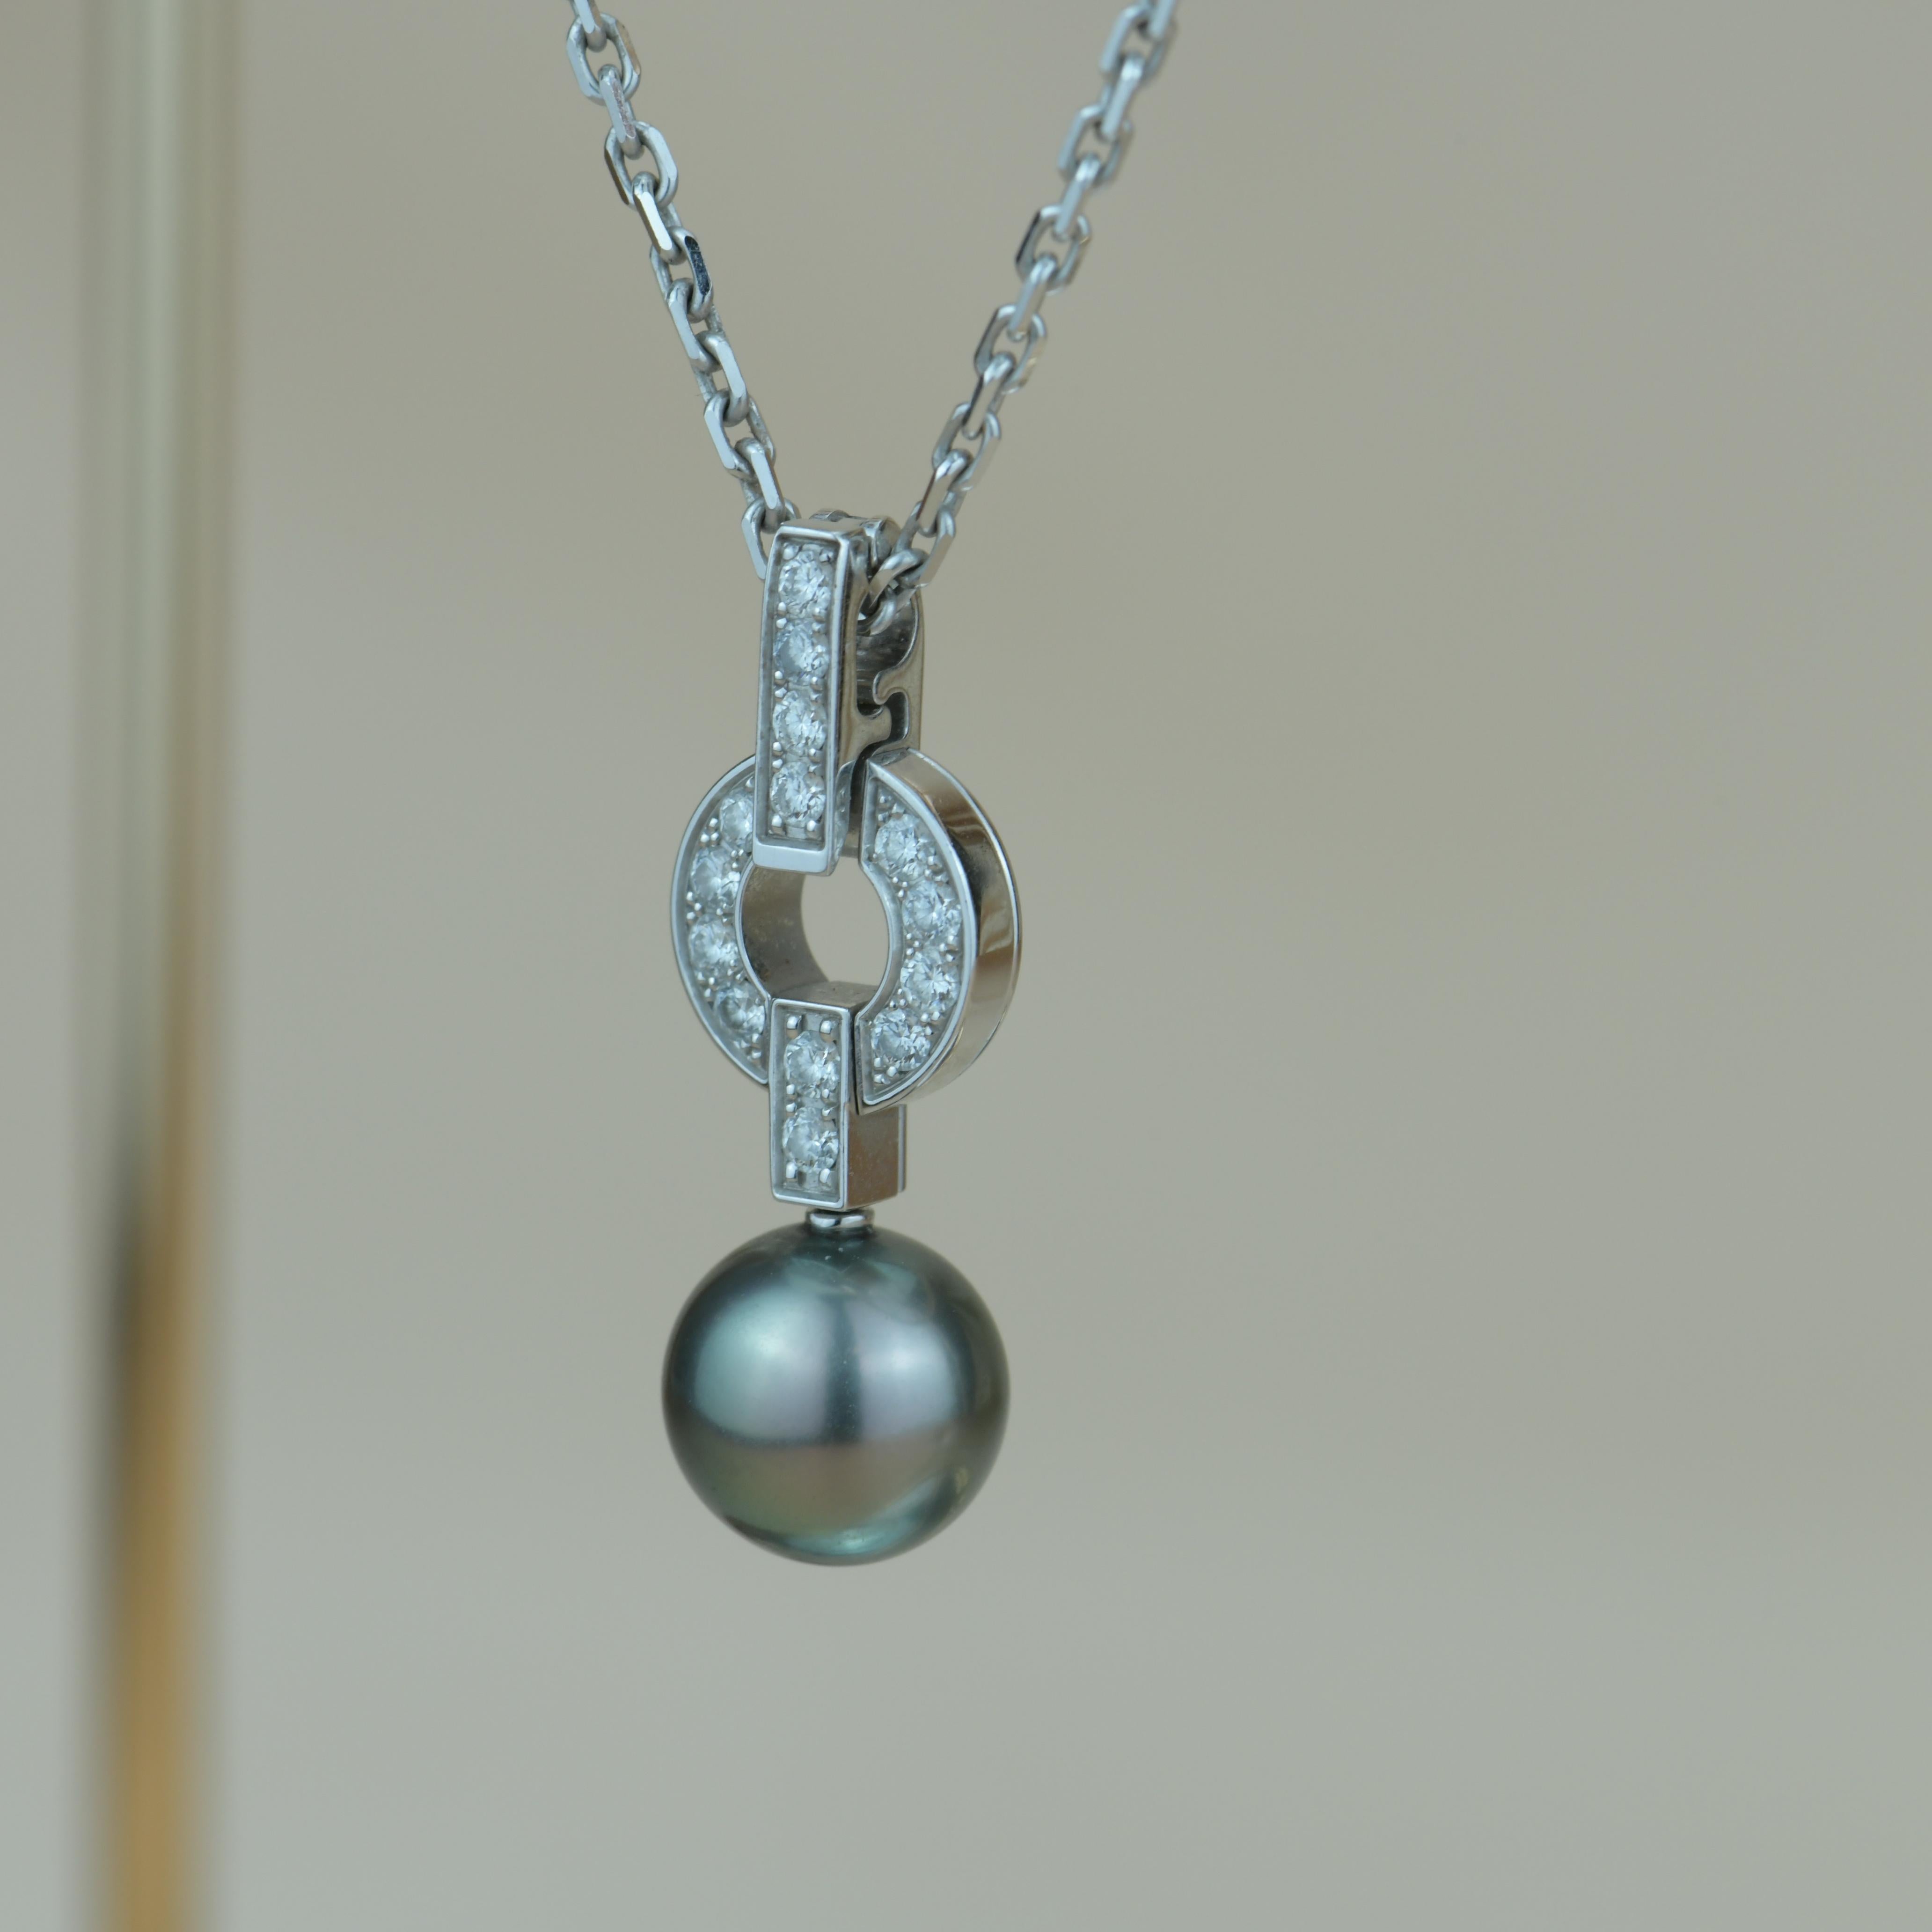 Brilliant Cut Cartier Himalia Diamond & Pearl Pendant Necklace